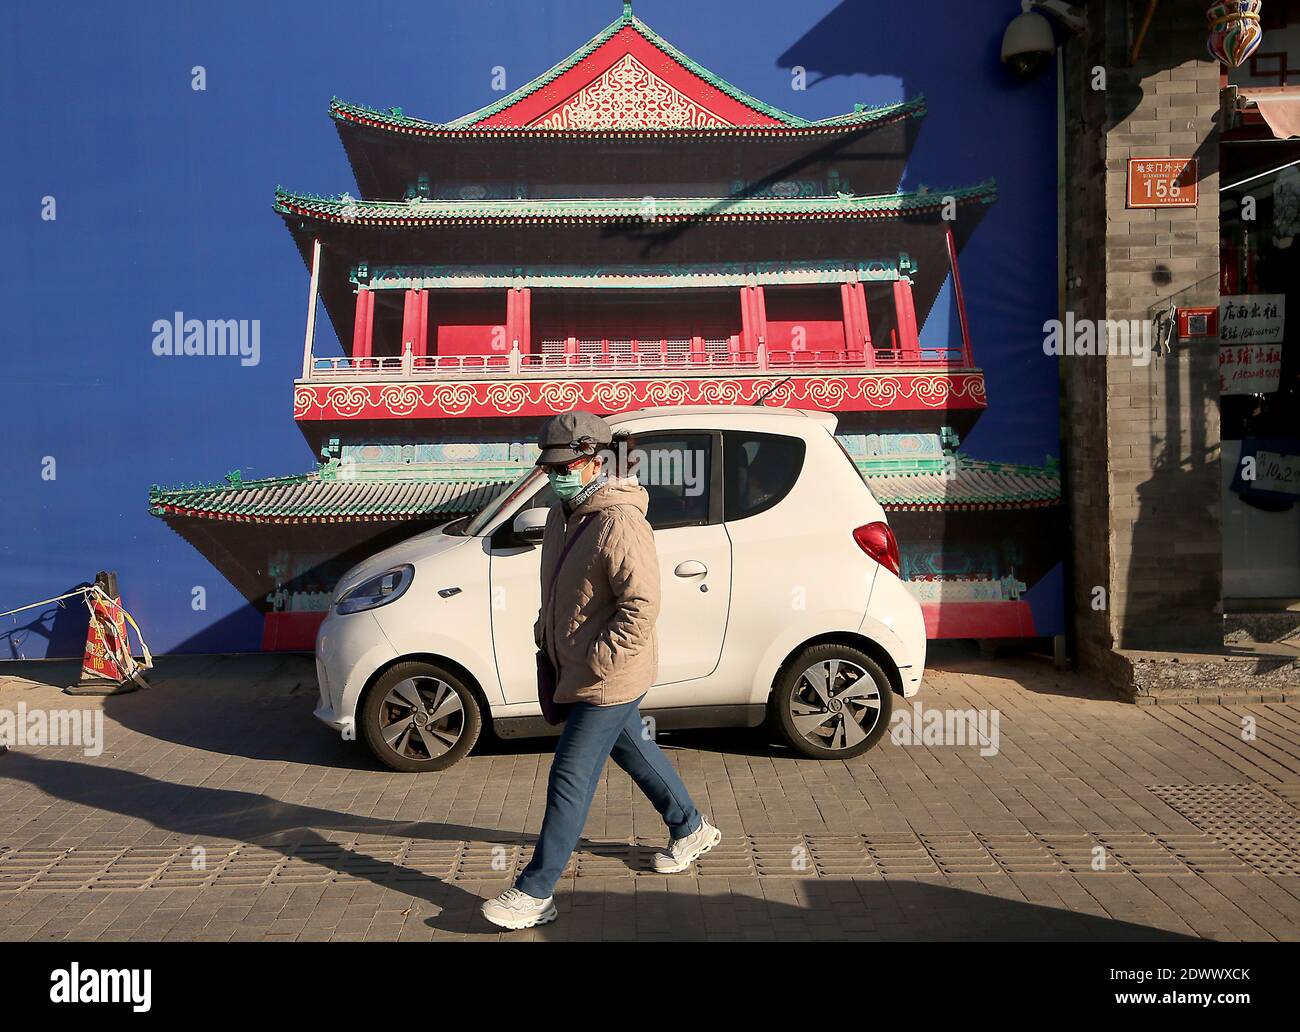 Peking, China. Dezember 2020. Am Mittwoch, den 23. Dezember 2020, wird vor einer Baustelle in Peking ein kleines Elektroauto geparkt. Chinas Autohersteller haben begonnen, eine wichtige, aufstrebende Marktgruppe auf dem massiven Automobilmarkt des Landes ins Visier zu nehmen - die jungen, städtischen Pendler, die keine großen Gehälter haben und die Herausforderungen der Parkplatzsuche verstehen. Foto von Stephen Shaver/UPI Kredit: UPI/Alamy Live Nachrichten Stockfoto